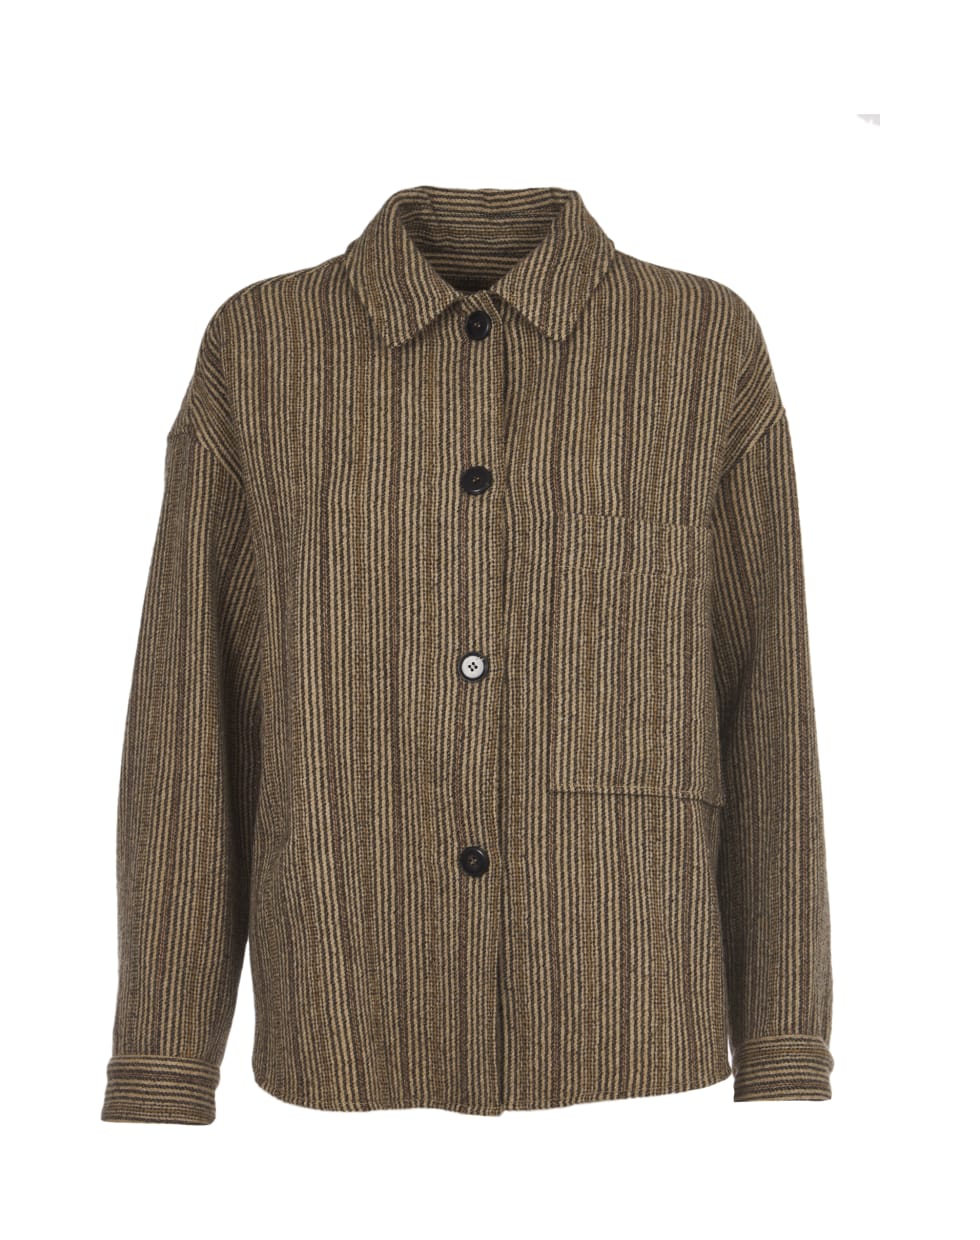 Pomandère Striped Wool Jacket - Brown